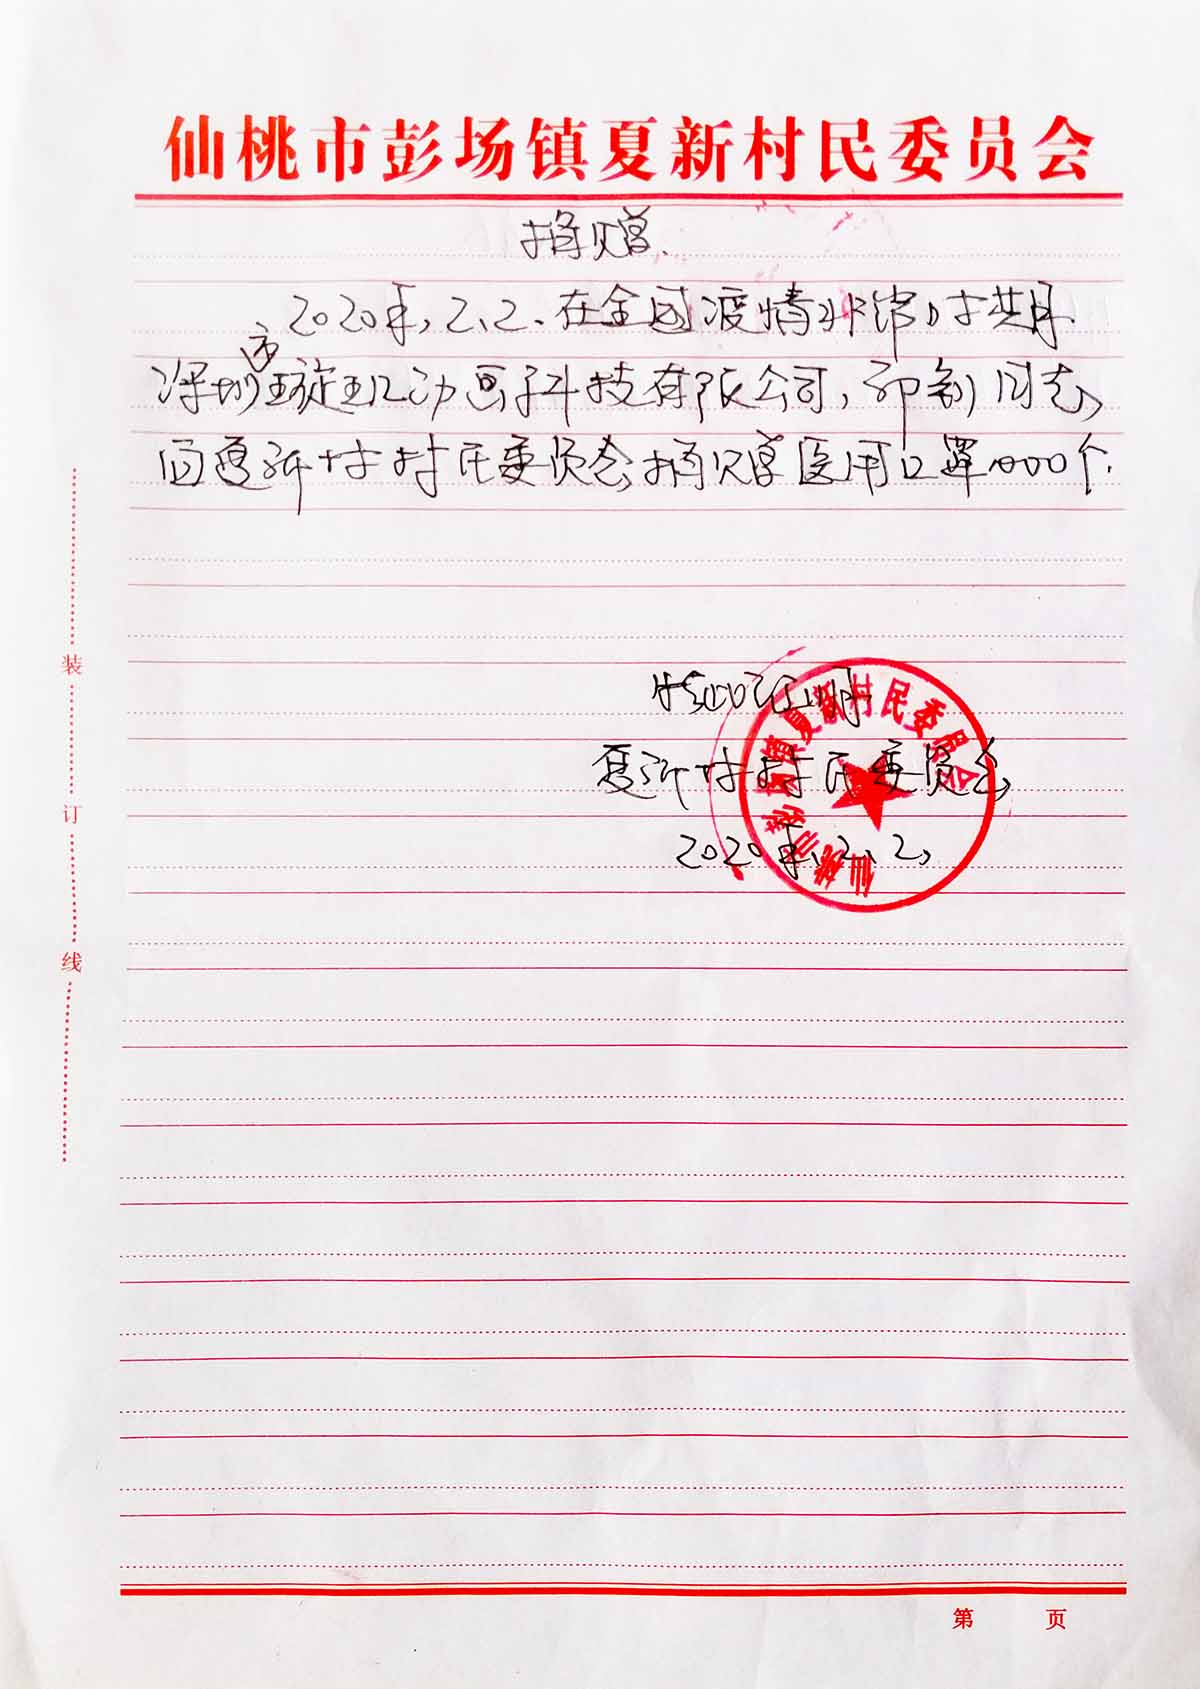 捐赠证明-夏新村村委定向1000个医用口罩.jpg